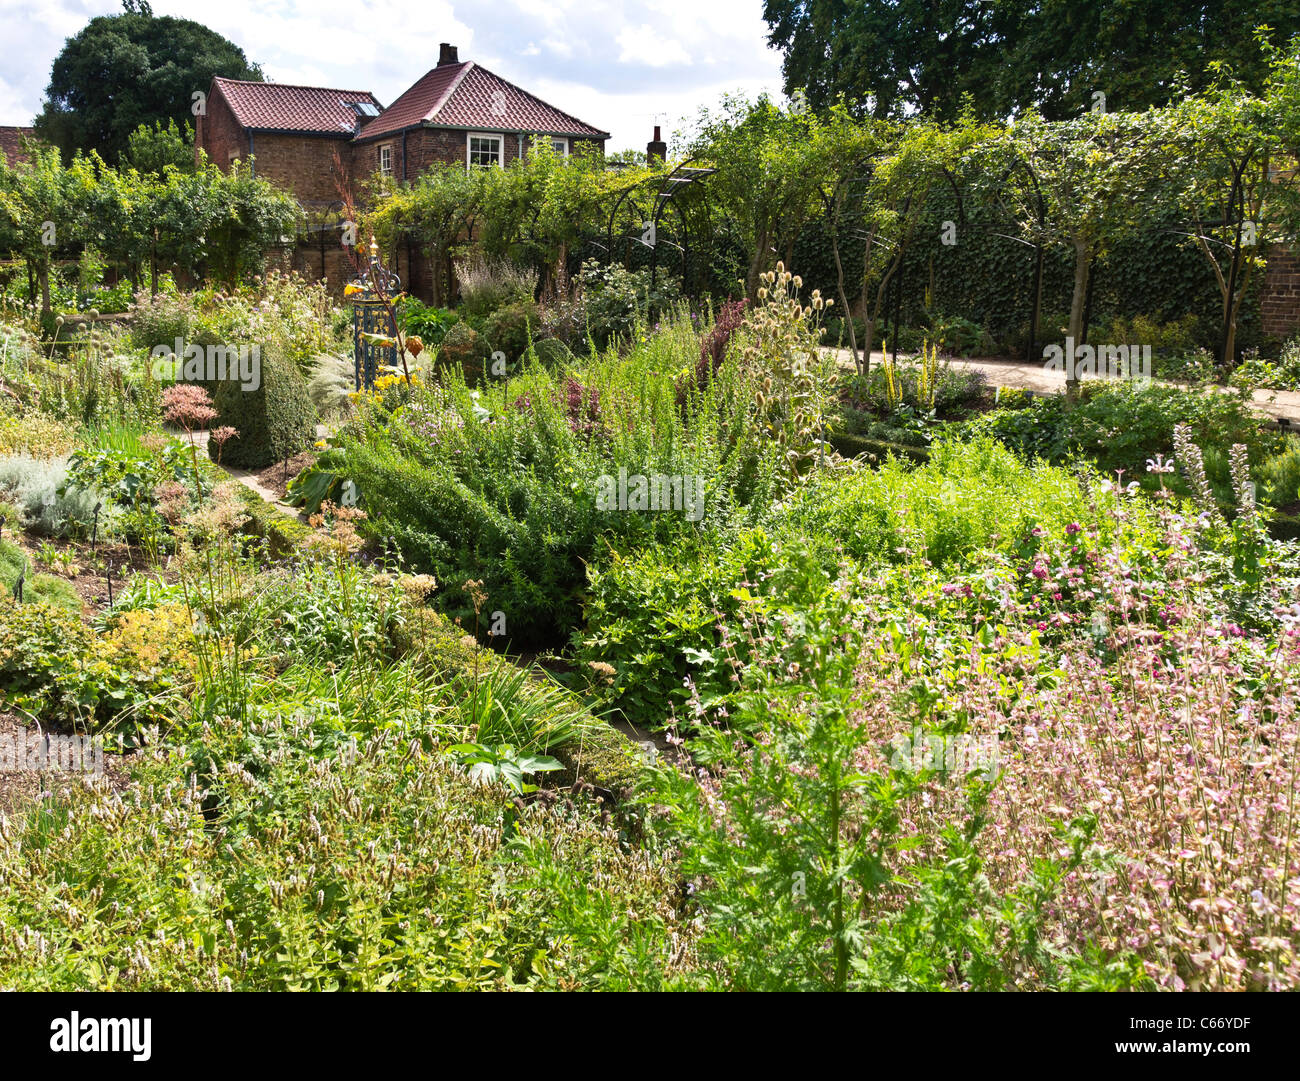 London, Kew Gardens, Royal Horticultural Society - the Nosegay Garden Stock Photo